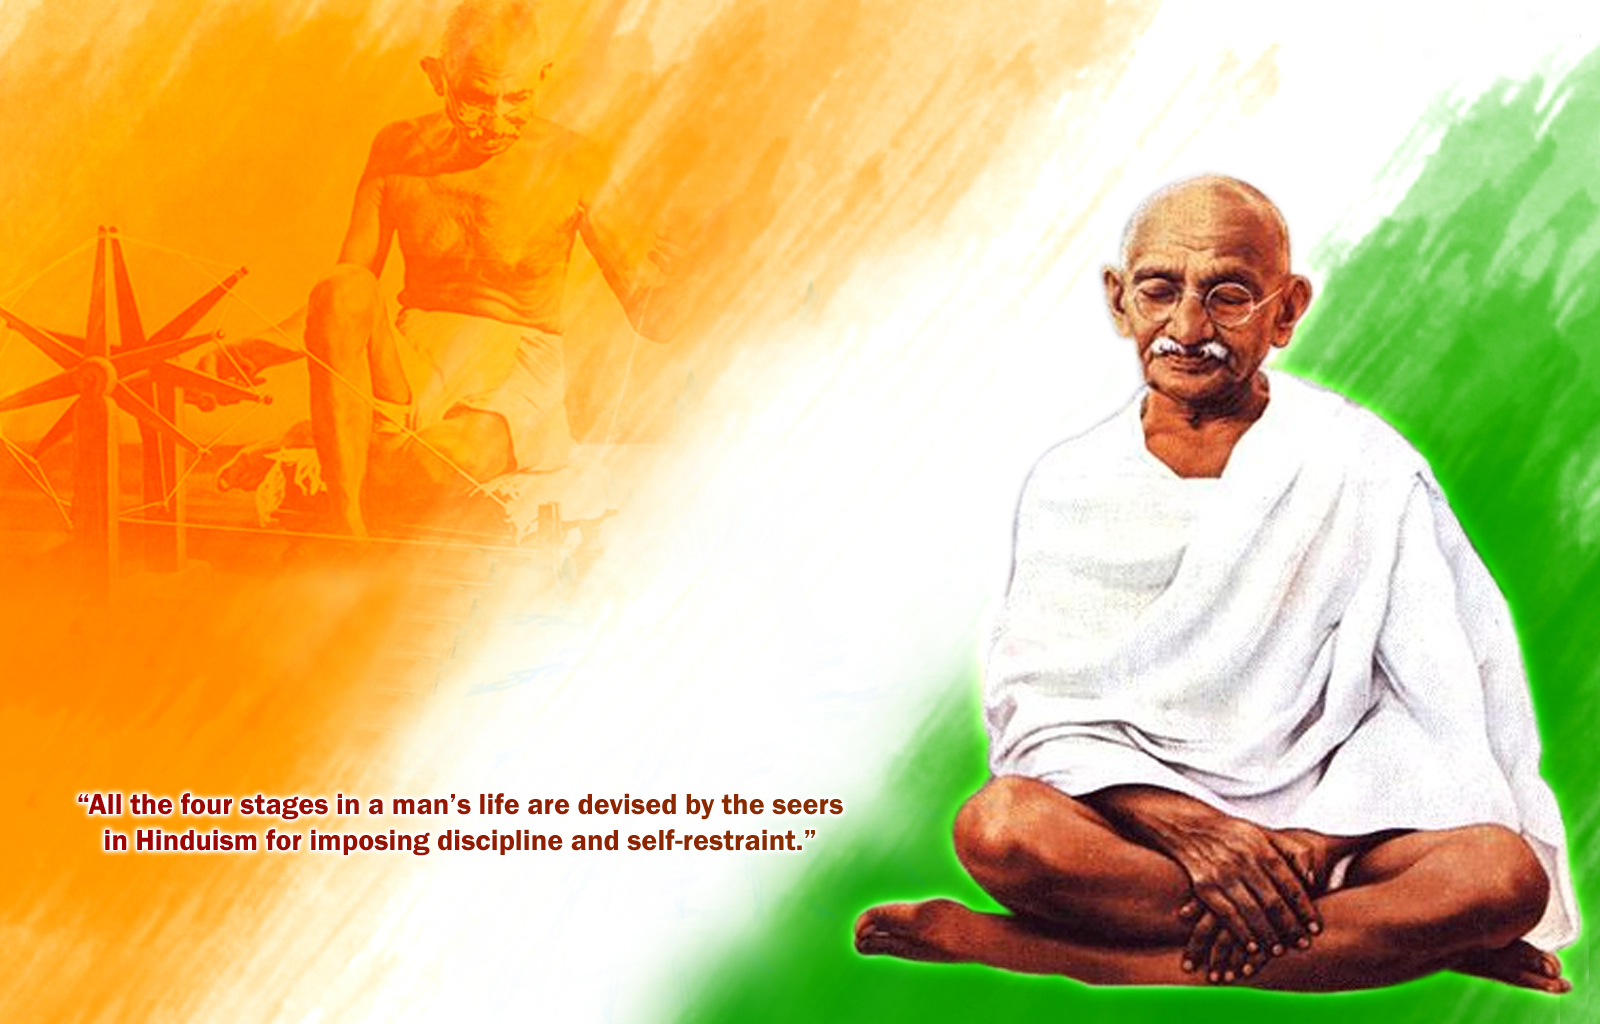 Mahatma Gandhi Ji Original Photo Wallpaper Image Full HD